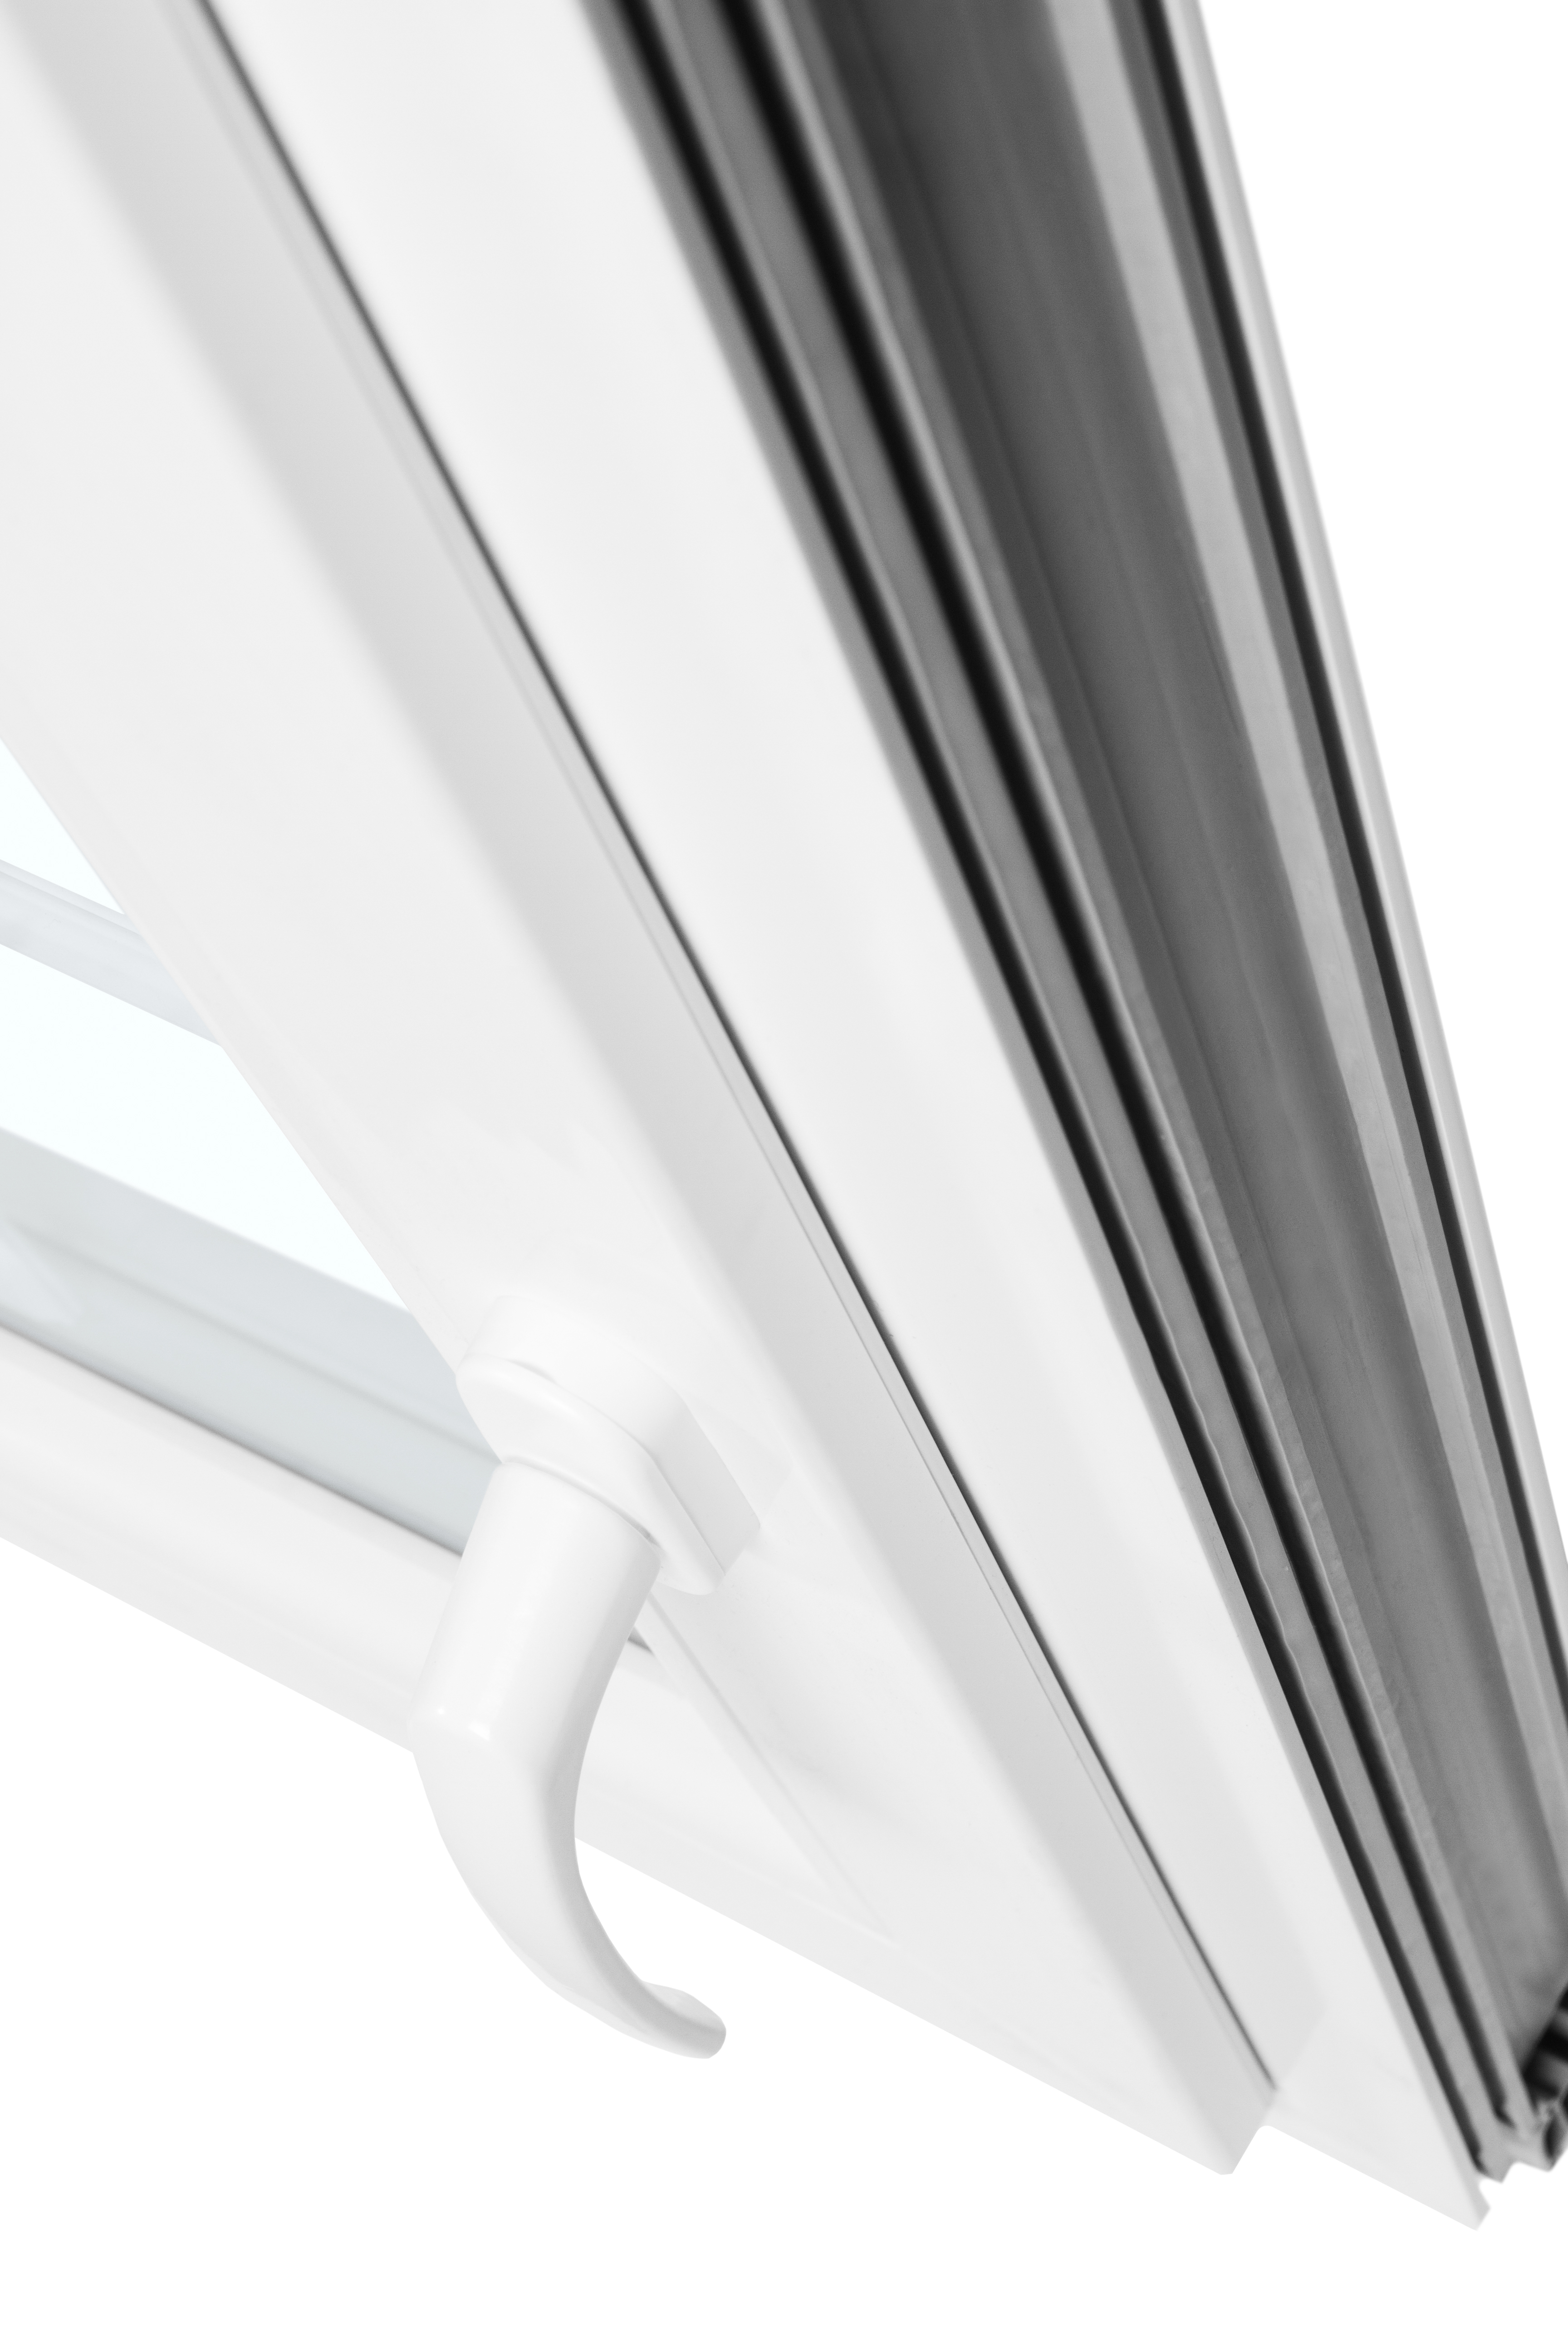 Okno plastové EKOSUN 6 biele, OS1A 50x62 P, dvojsklo, 6kom/81mm (vr. kľučky)